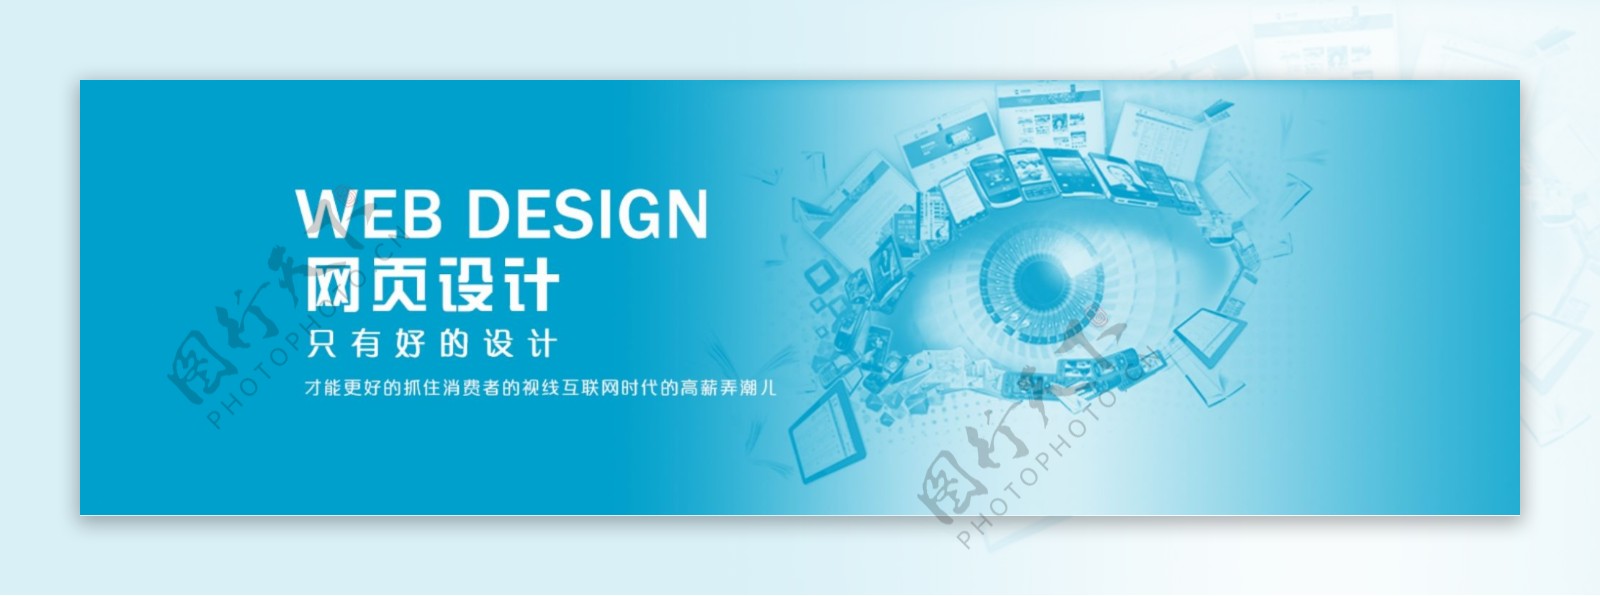 科技网页banner